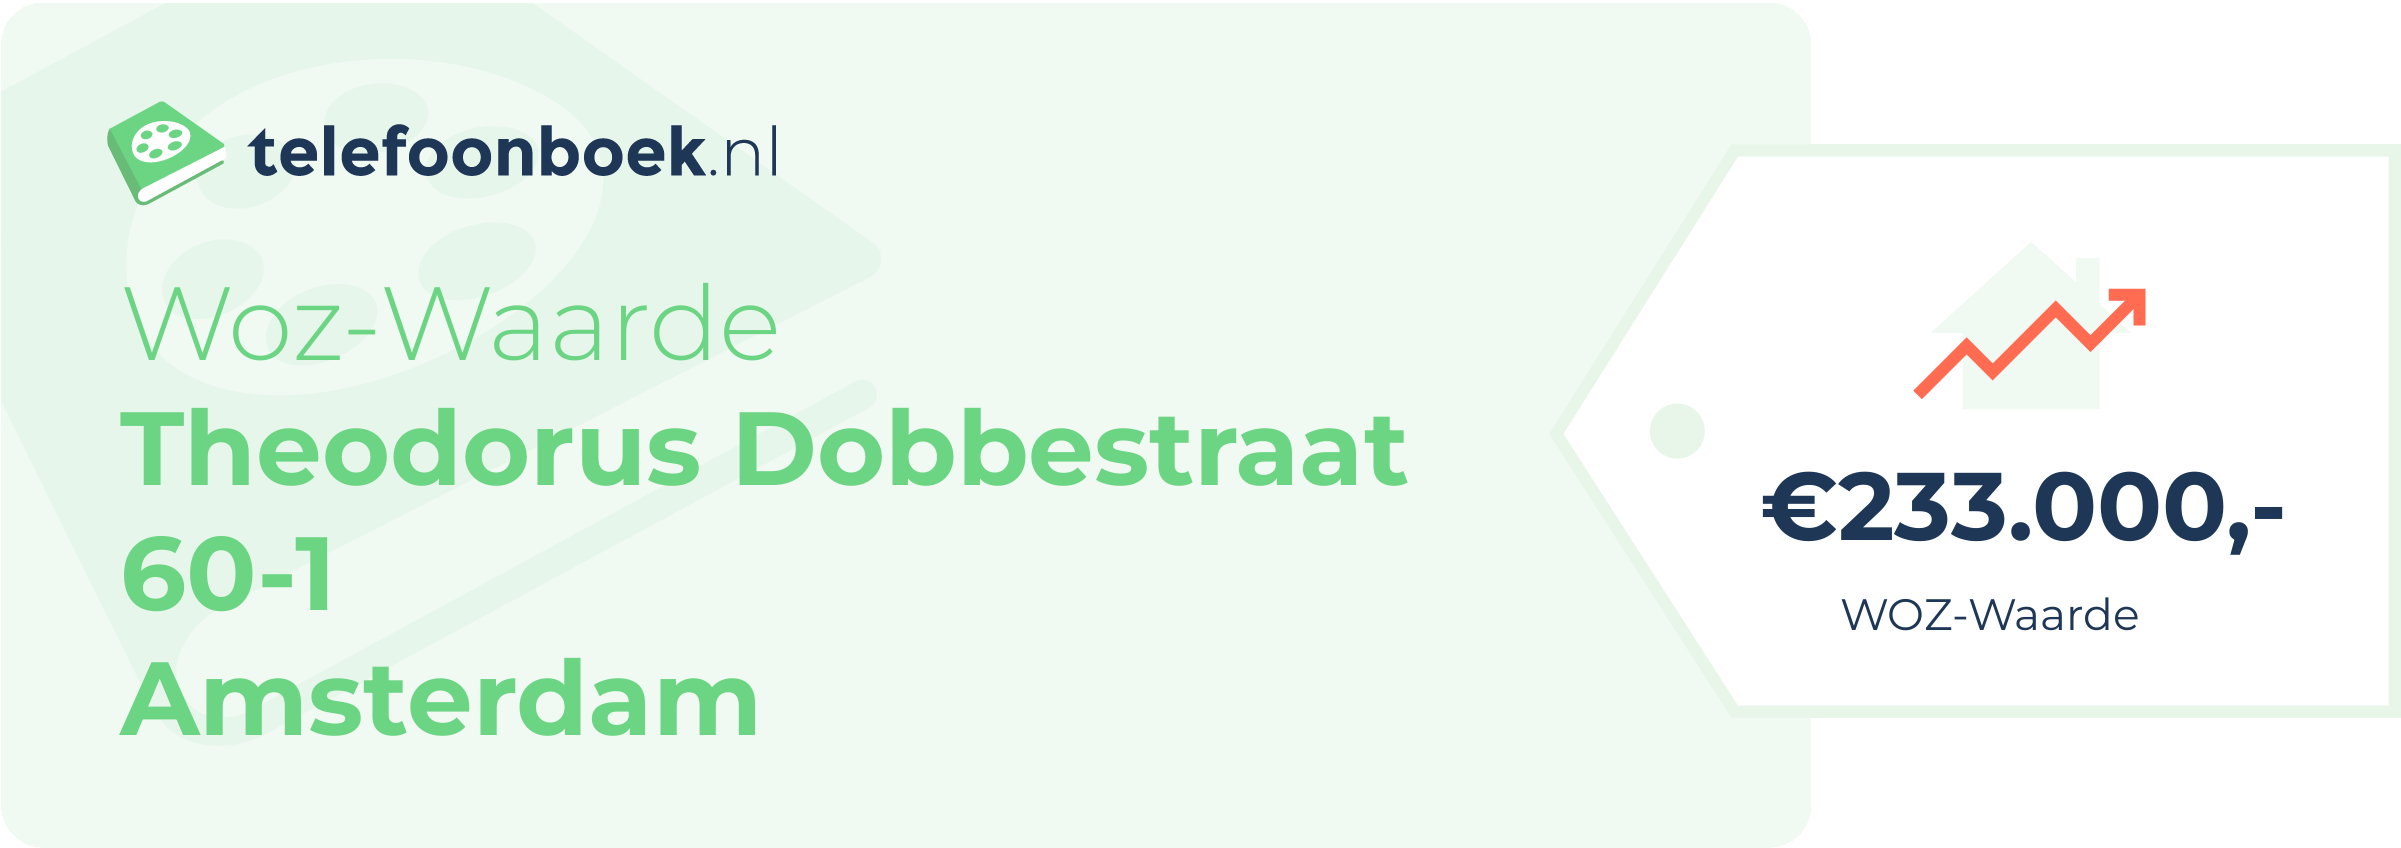 WOZ-waarde Theodorus Dobbestraat 60-1 Amsterdam